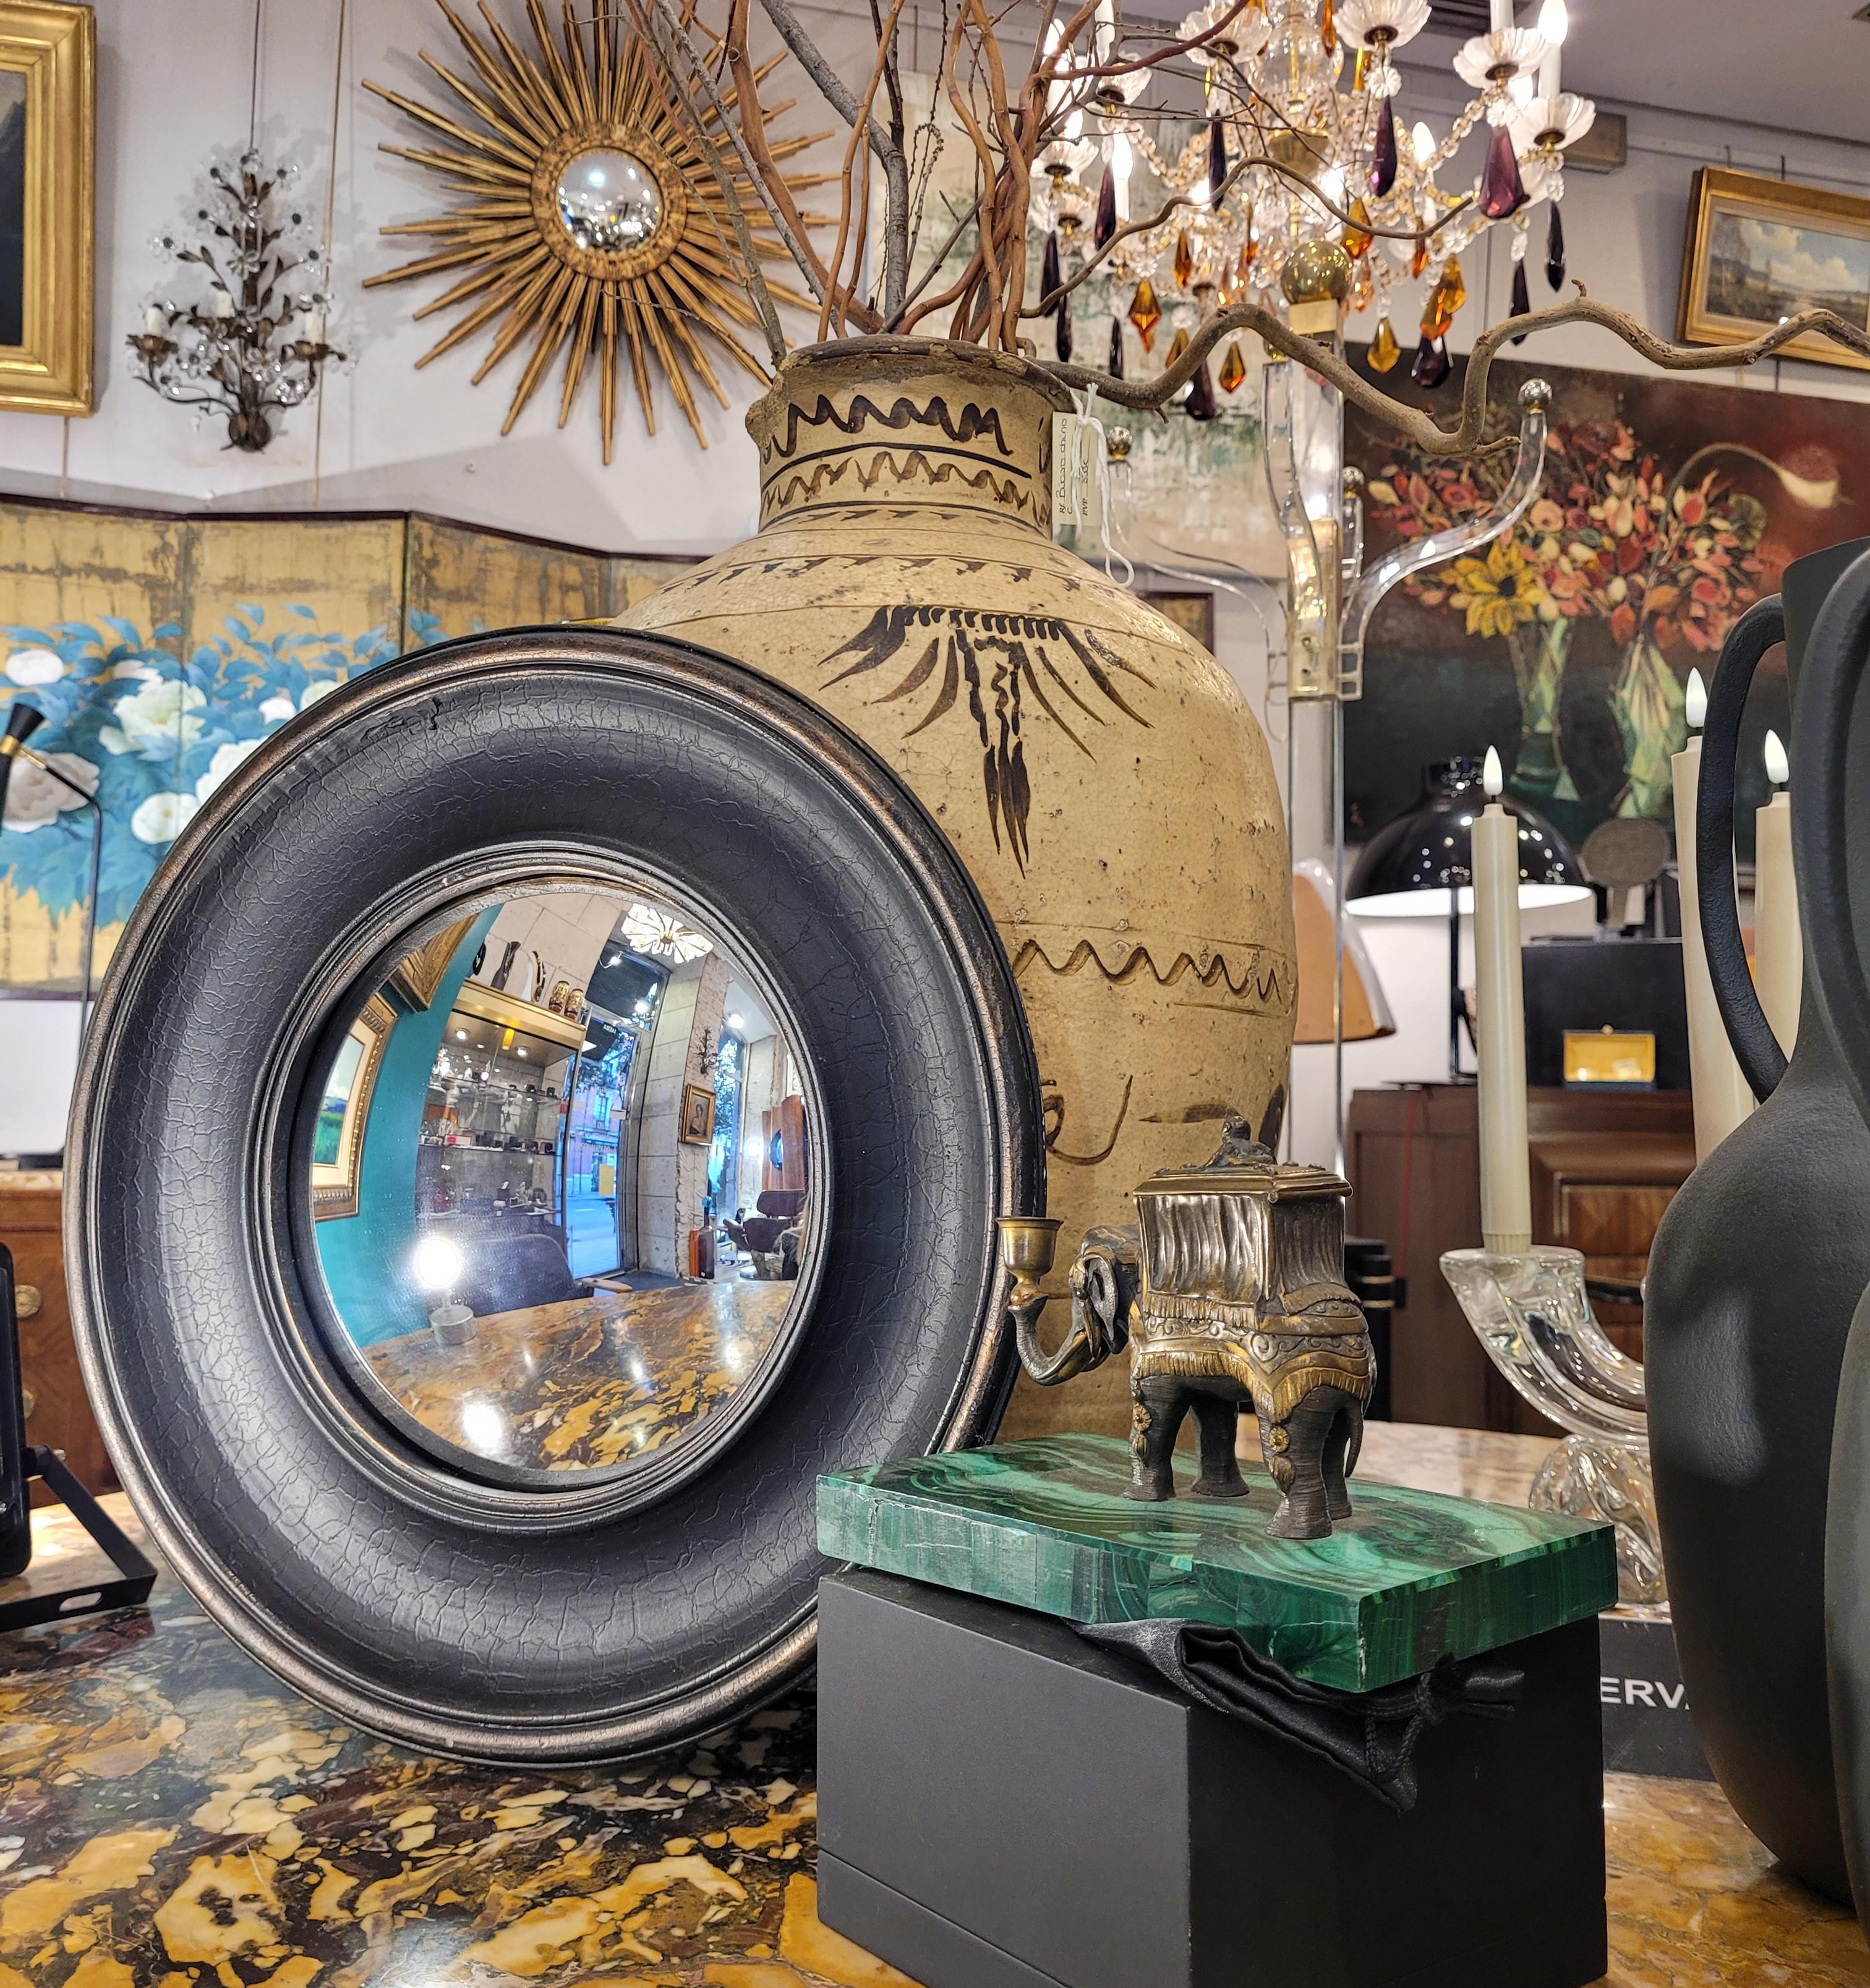  Magnifique miroir convexe noir, encadrement vintage, fin du 20ème siècle - France.
Magnifique et très tendance miroir convexe vintage, avec un cadre noir avec un effet craquelé et usé sur les bords de l'anneau extérieur. En même temps, il présente